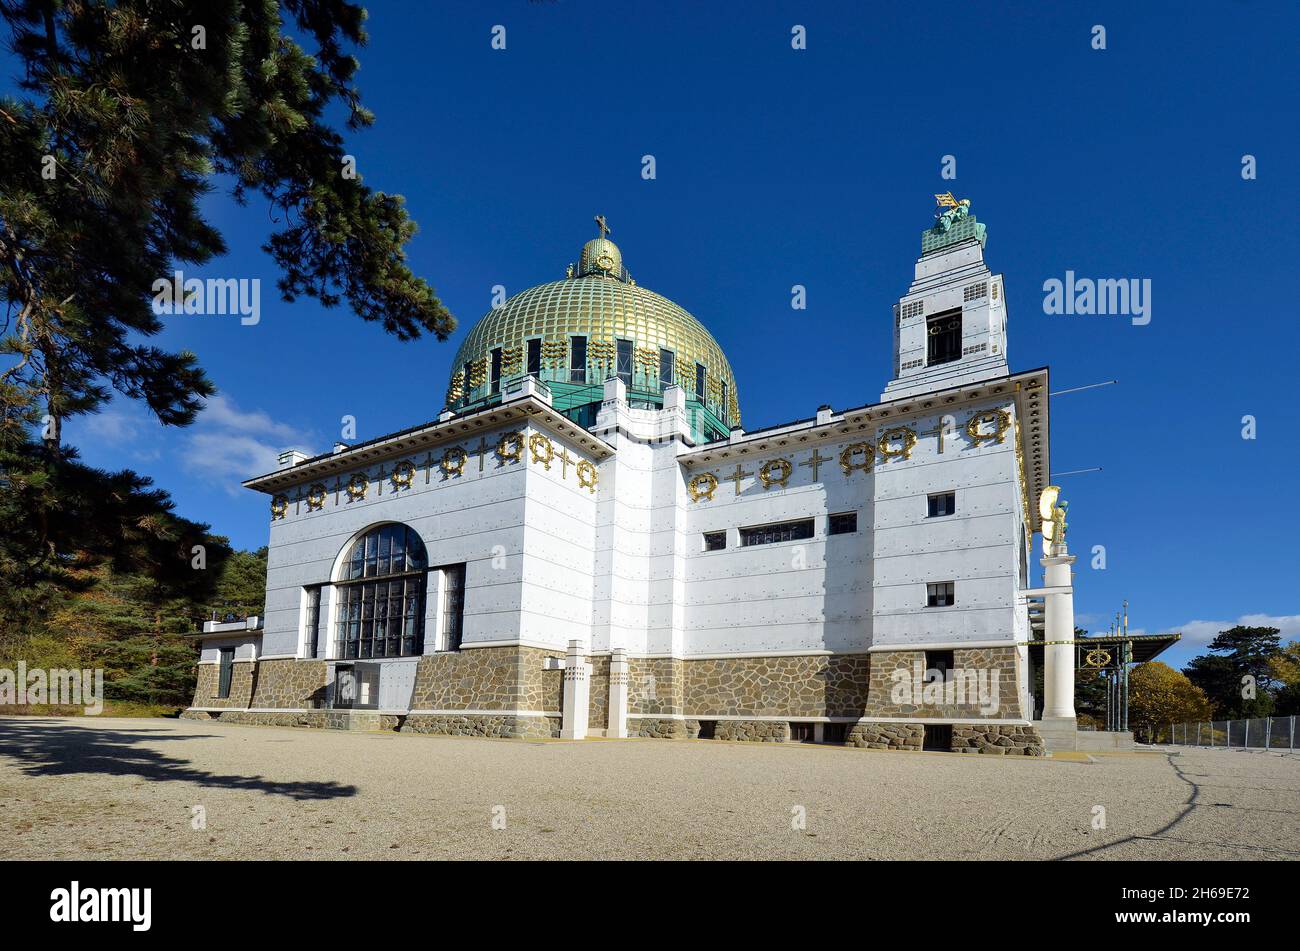 Wien, Österreich - 06. November 2021: Kirche St. Leopold besser bekannt als Kirche am Steinhof, nach Entwürfen von Otto Wagner und gilt als Kirche am Steinhof Stockfoto